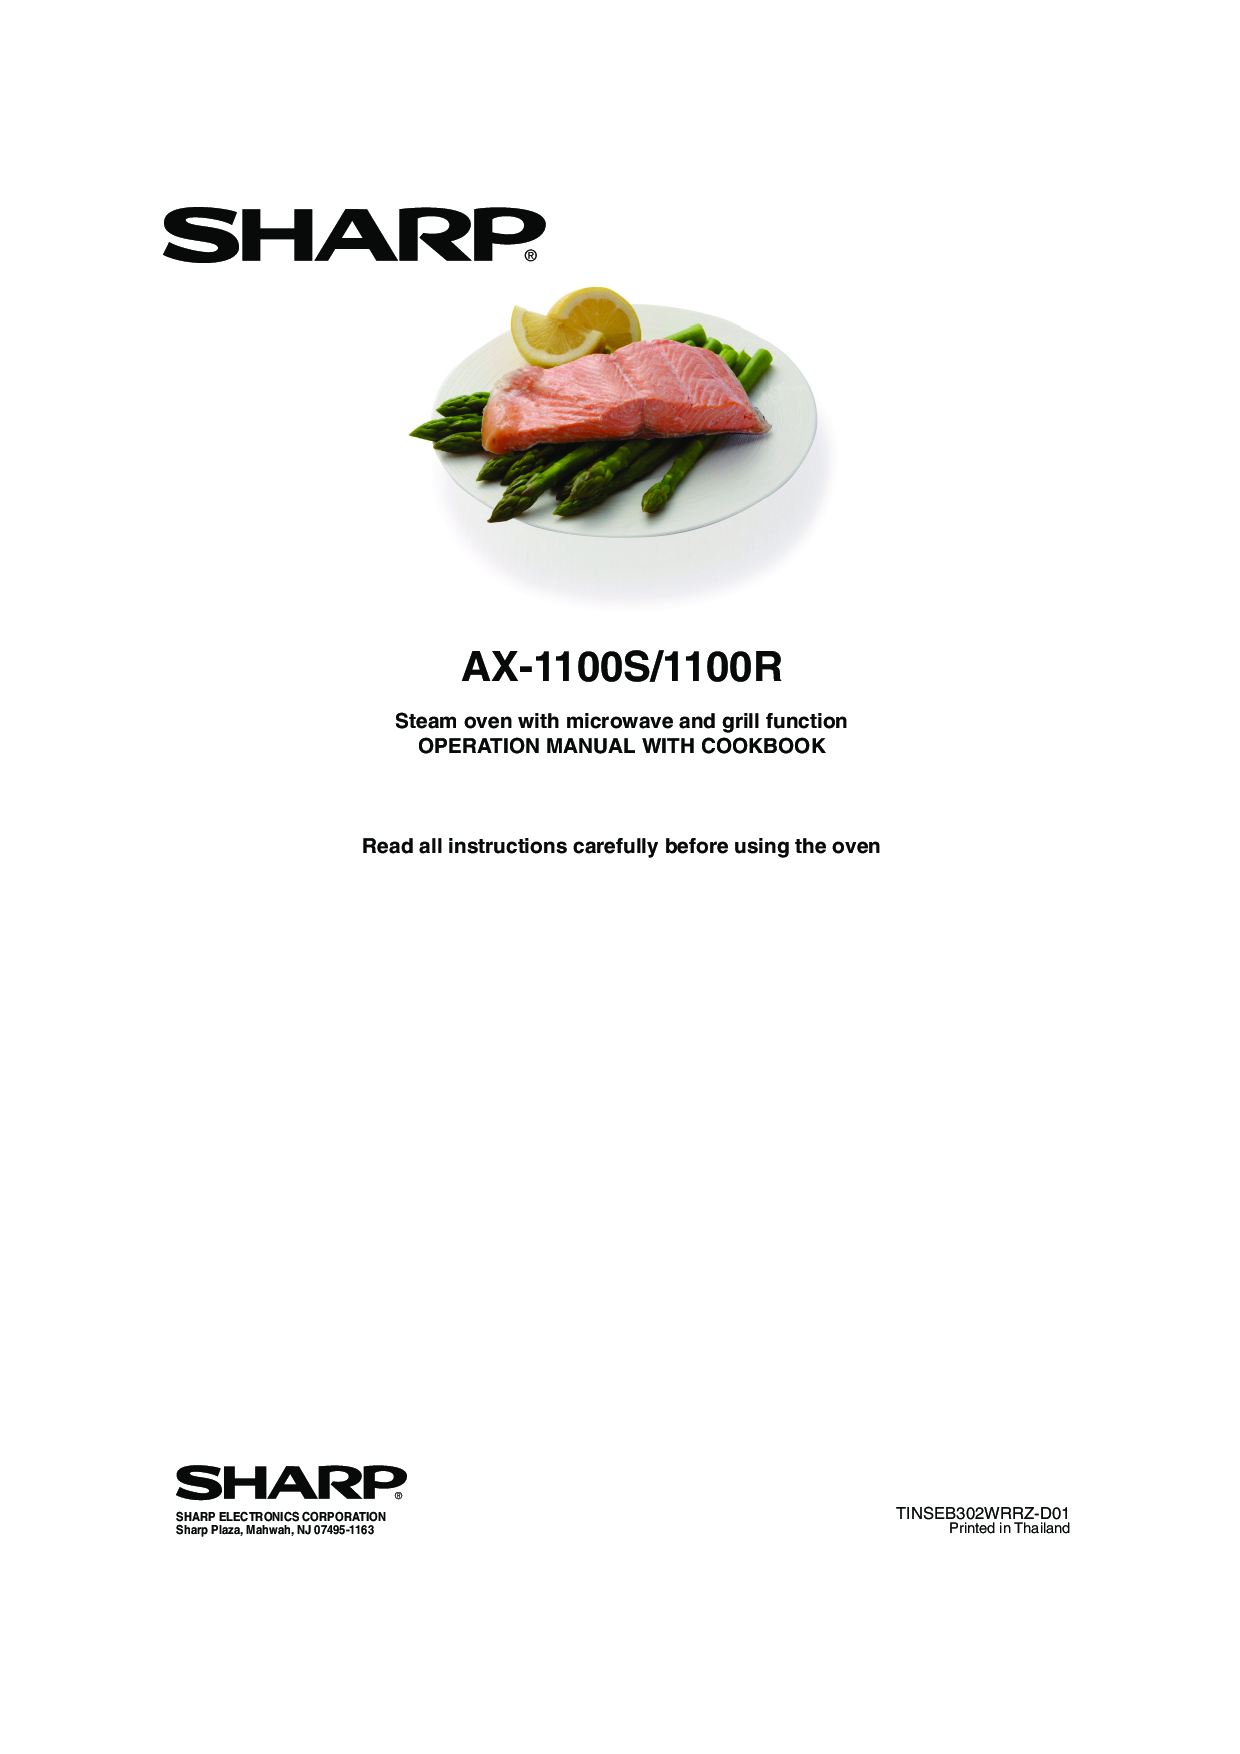 Singer AX-1100S, AX-1100R User Manual